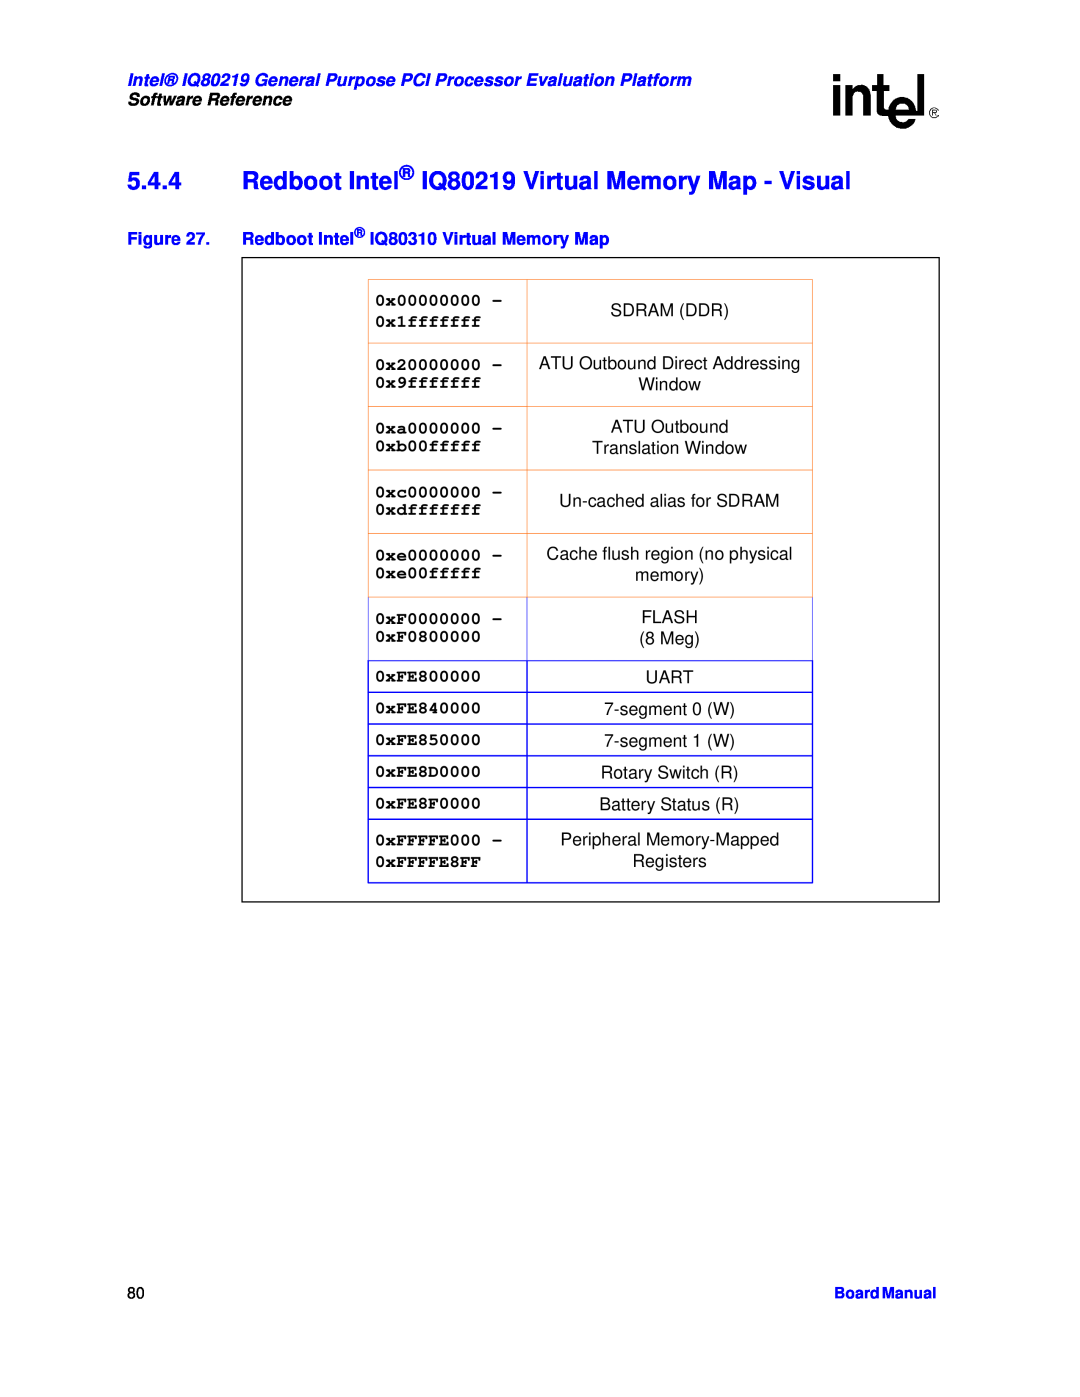 Intel Redboot Intel IQ80219 Virtual Memory Map - Visual, Redboot Intel IQ80310 Virtual Memory Map, Software Reference 